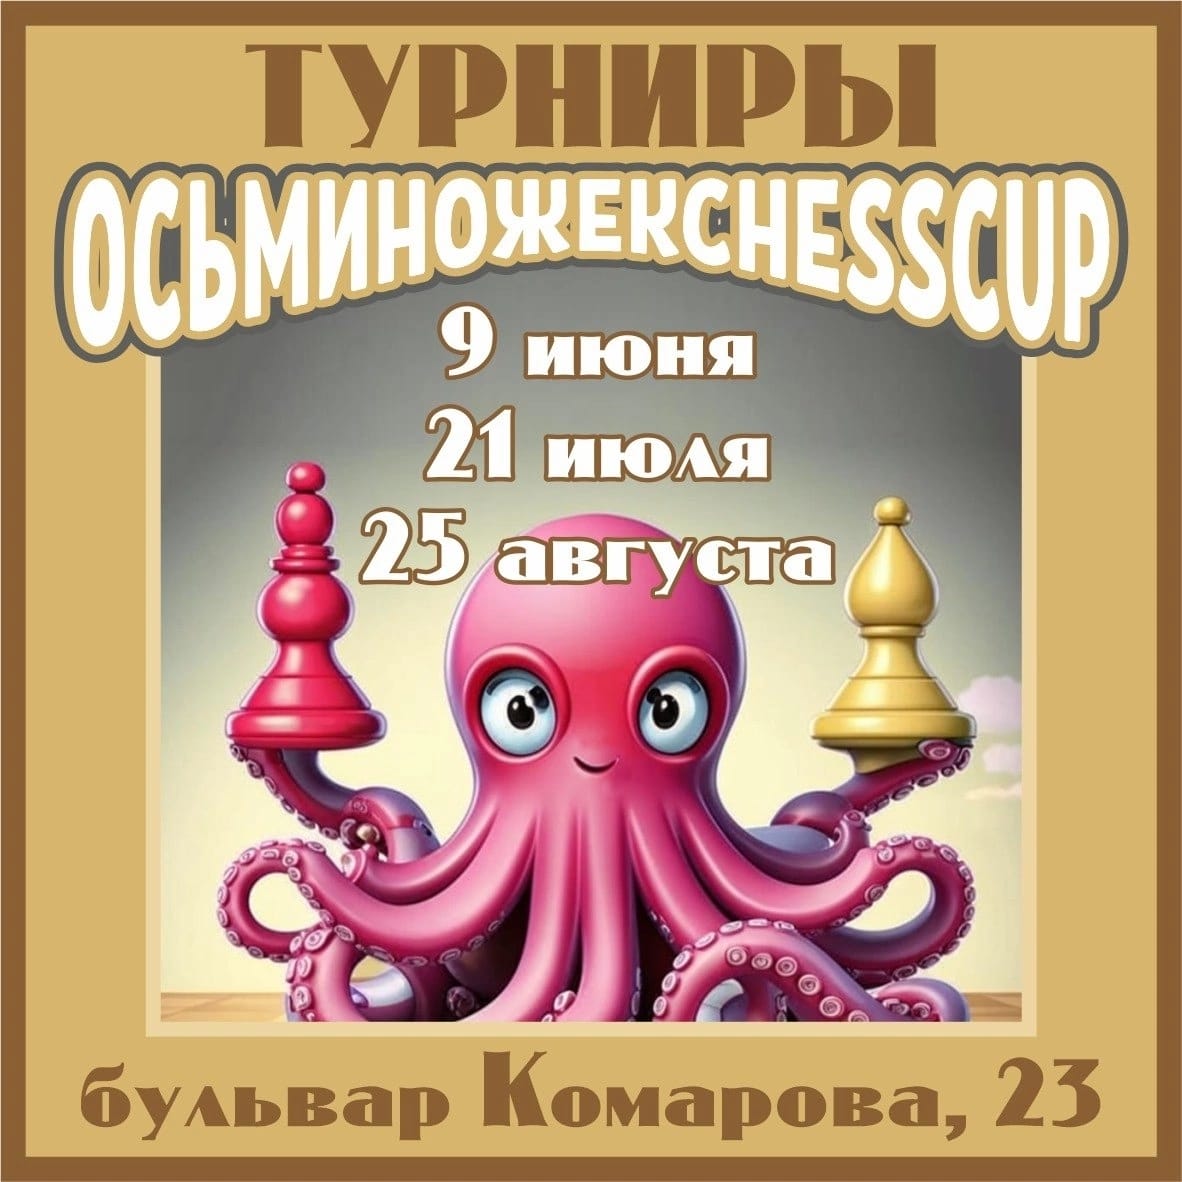 Федерация шахмат Ростовской области информирует